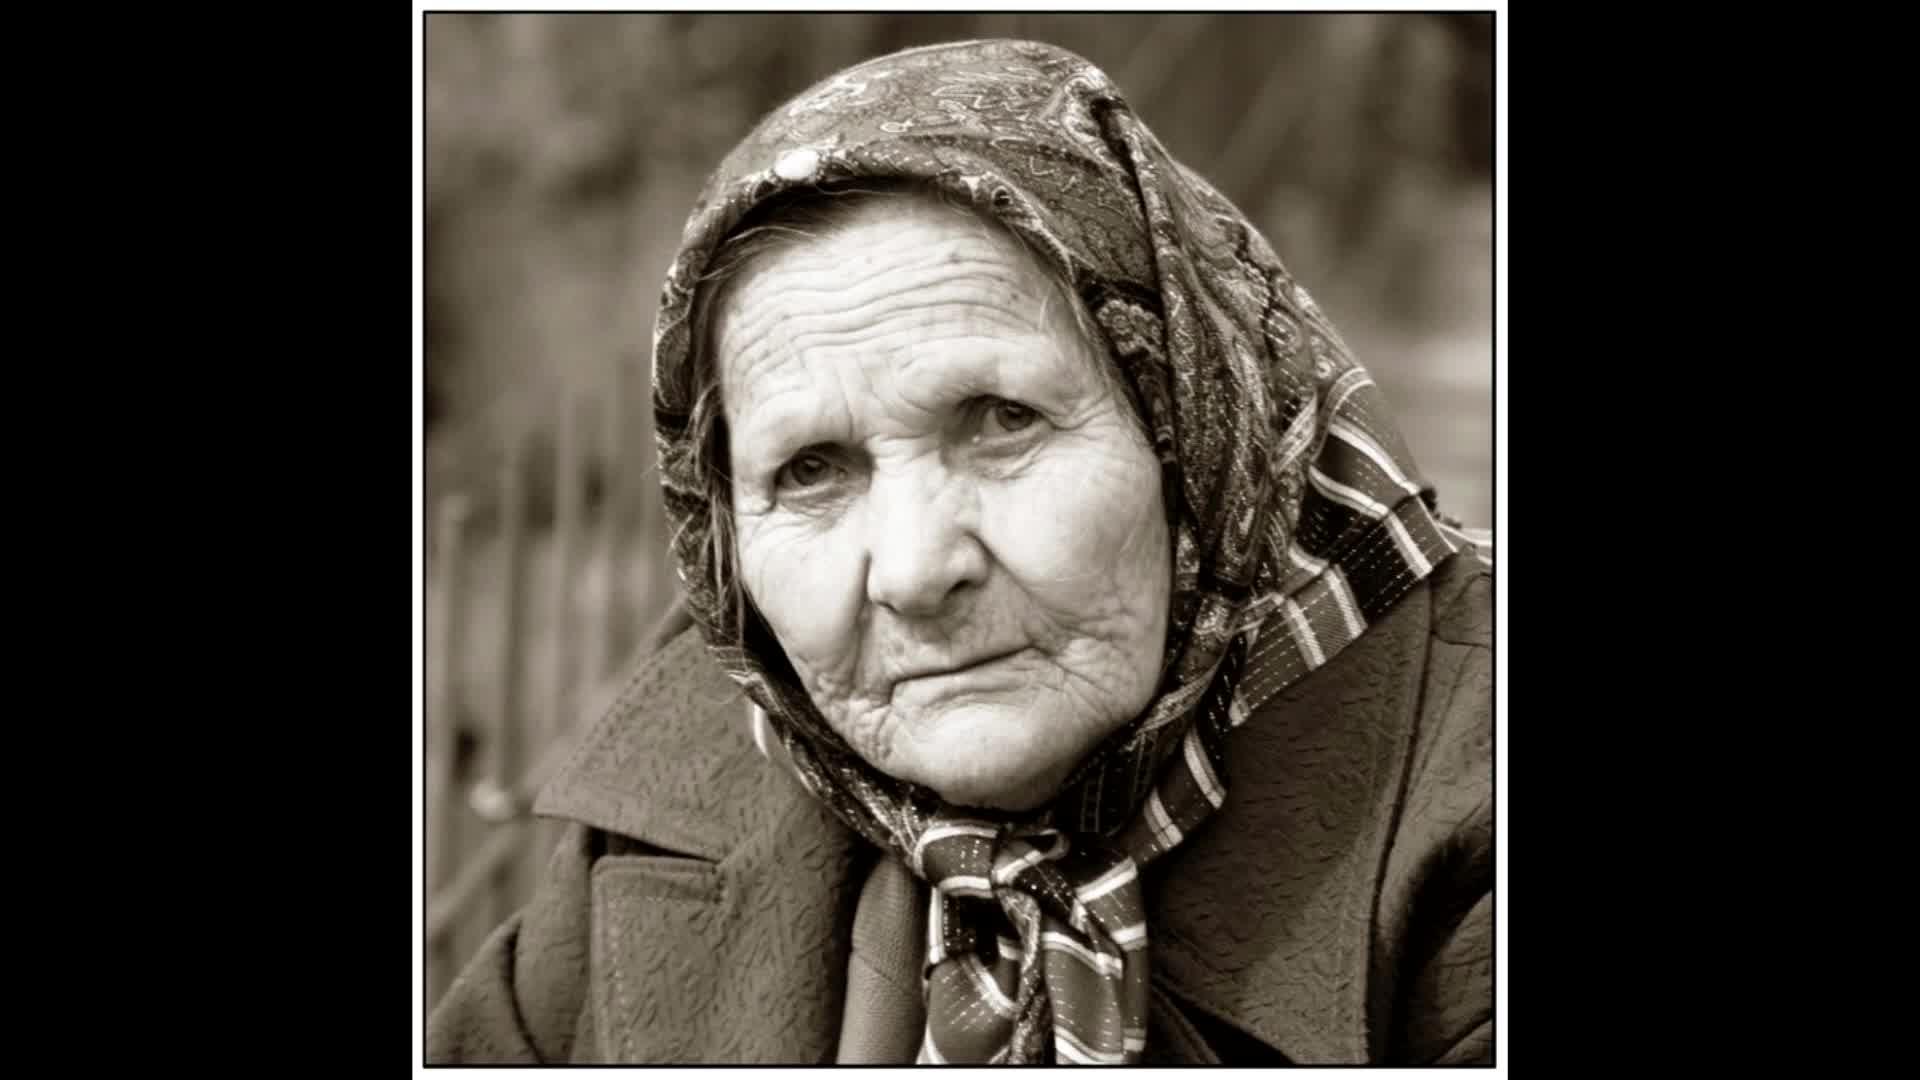 Внучка песня слушать. Глаза бабушки и внучки. Песни бабушек в деревнях. Музыка для бабушки. Бабушка с внучкой Кавказ.